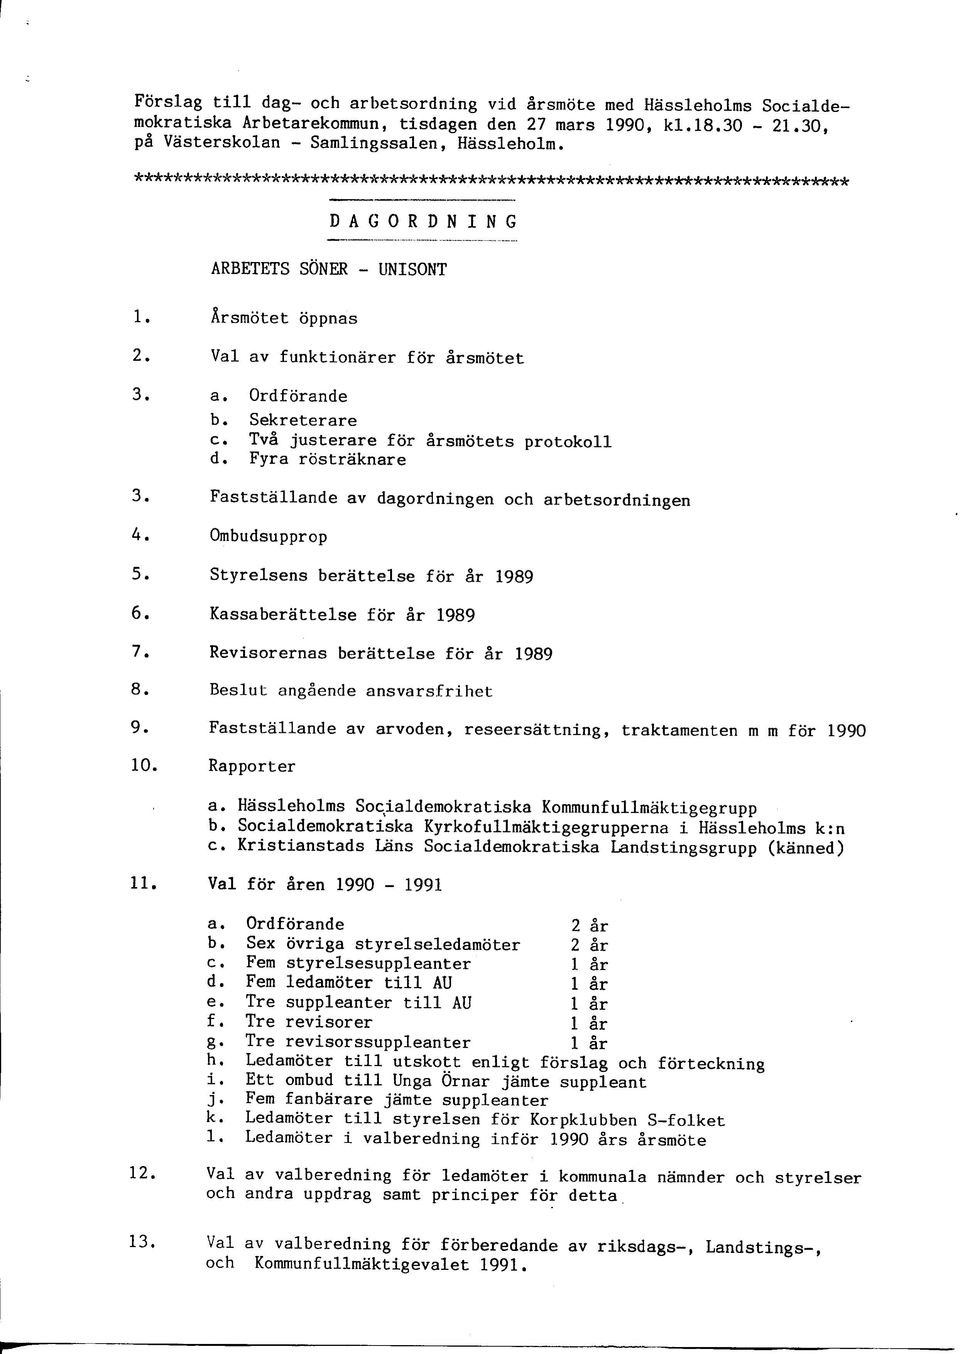 Faststallande av dagordningen och arbetsordningen A. Ombudsupprop 5. Styrelsens berattelse for ar 1989 6. Kassaberattelse for ar 1989 7. Revisorernas berattelse for ar 1989 8.